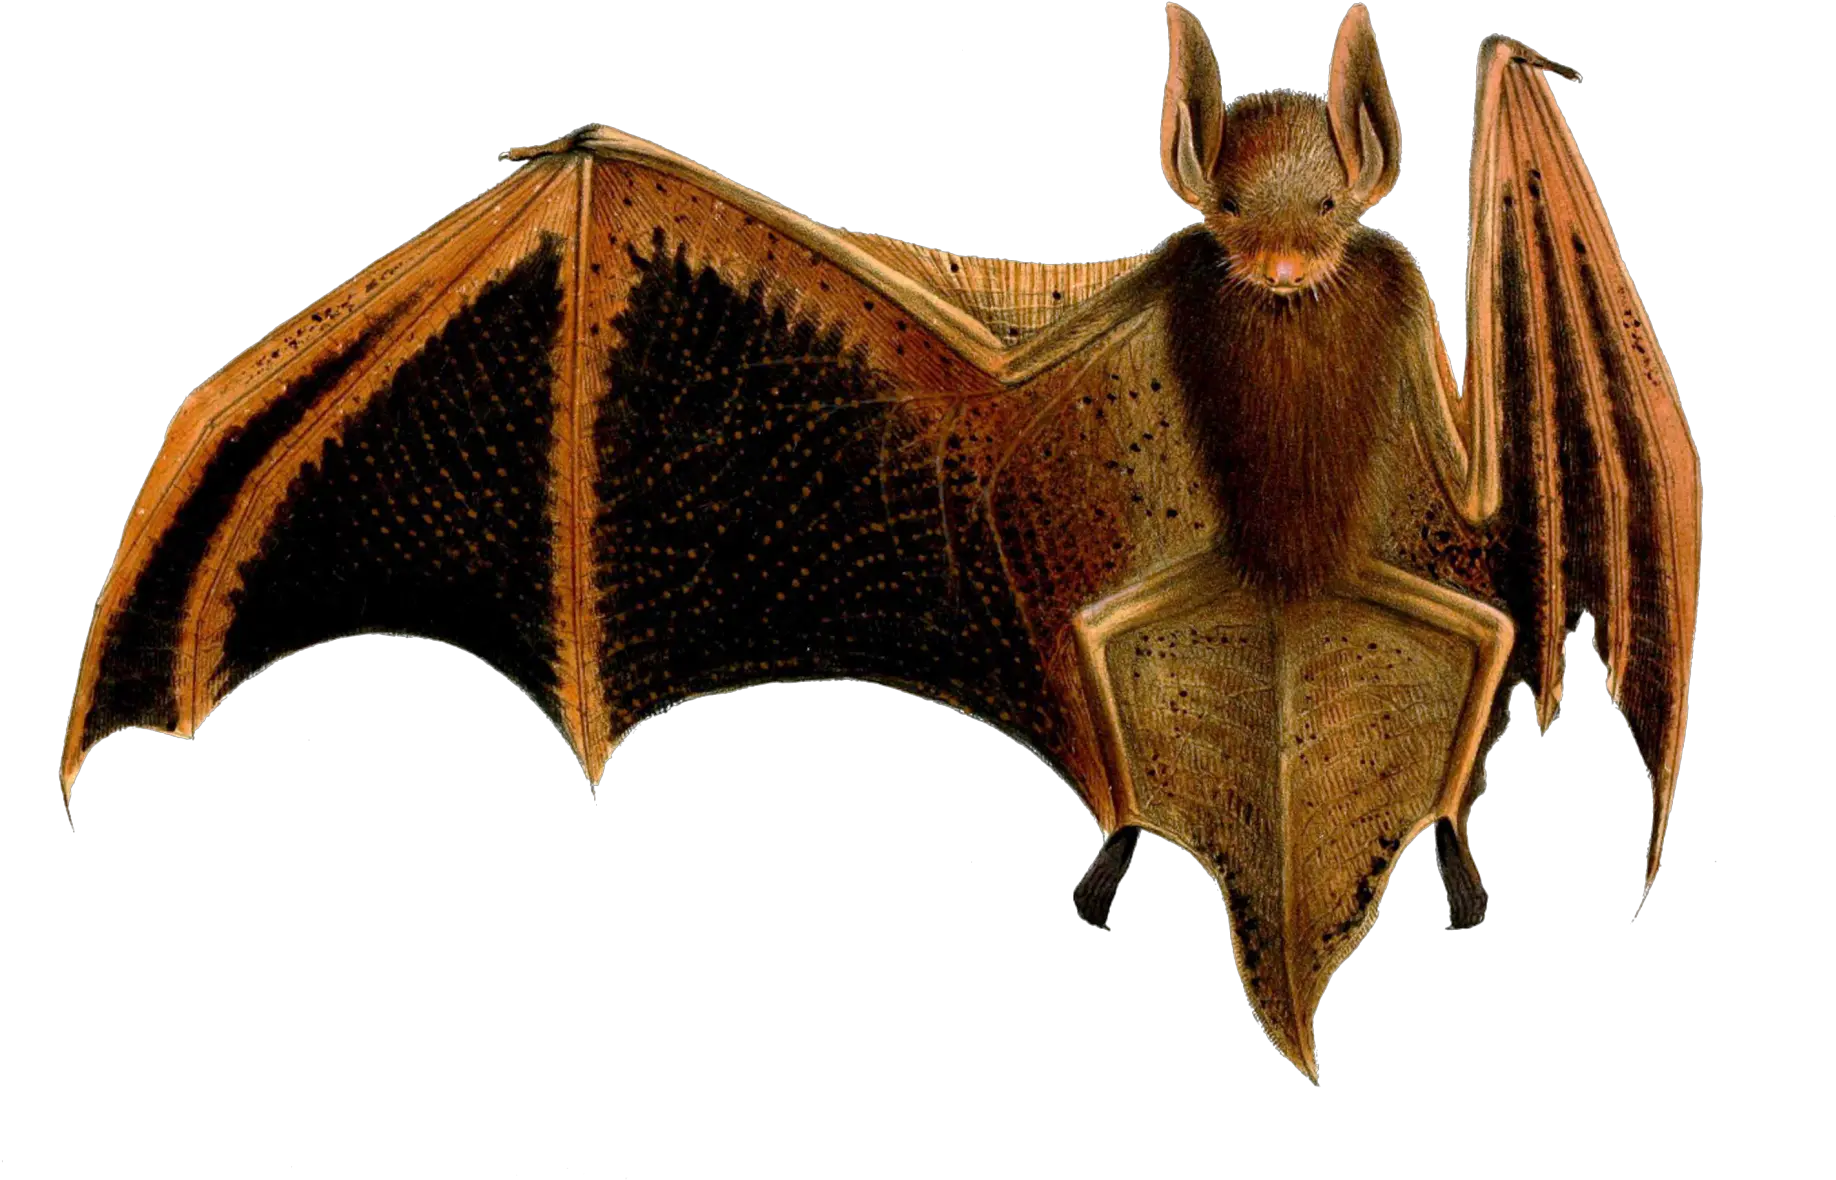 Bat Vintage Art Free Stock Photo Public Domain Pictures Murcielago Papel Png Bats Transparent Background